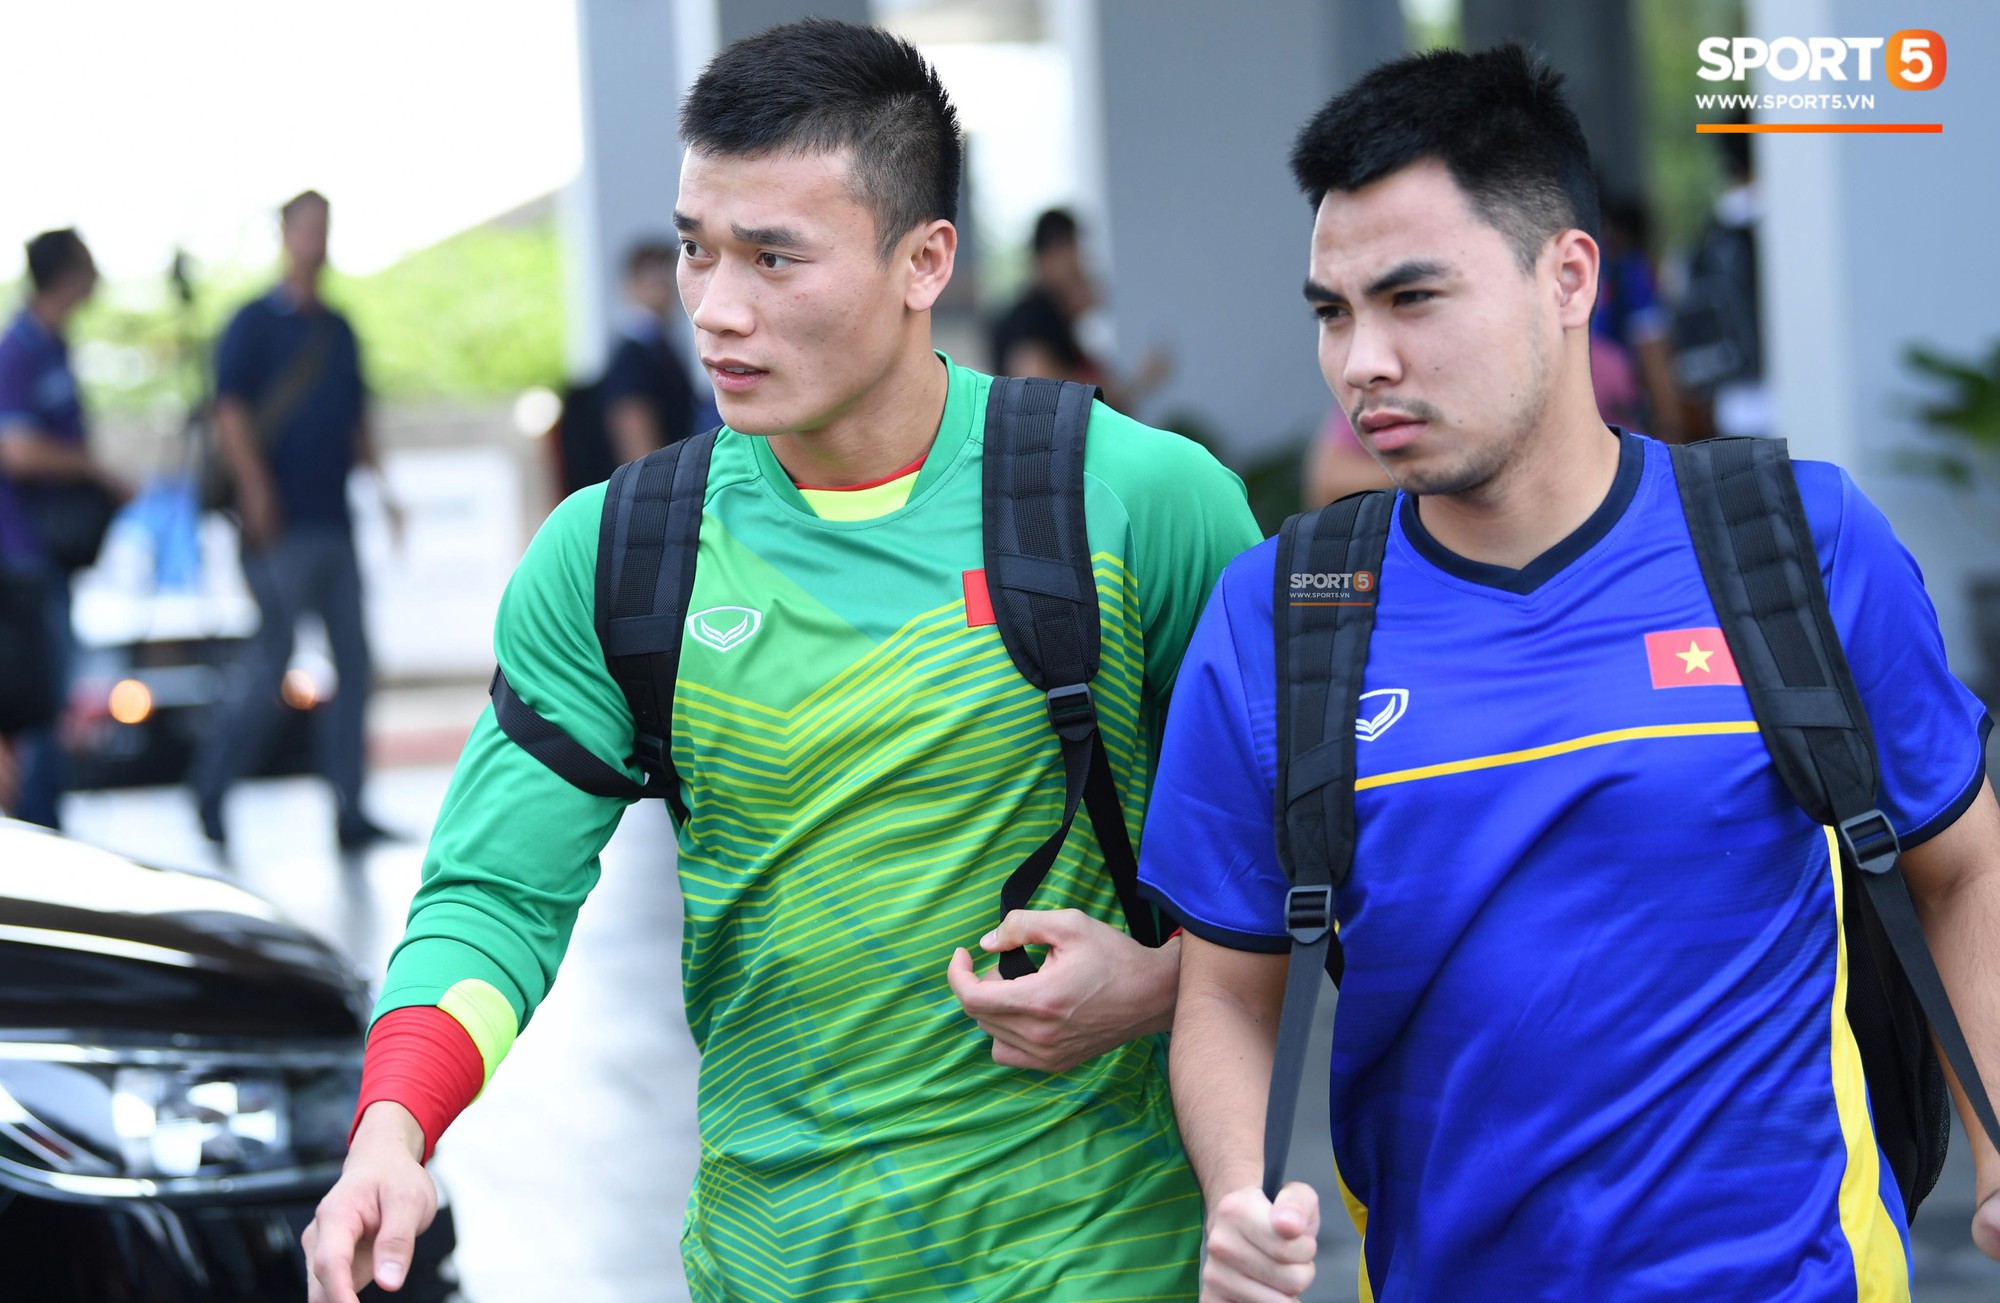 Đội tuyển Olympic Việt Nam thoải mái trước giờ tập luyện - Ảnh 3.